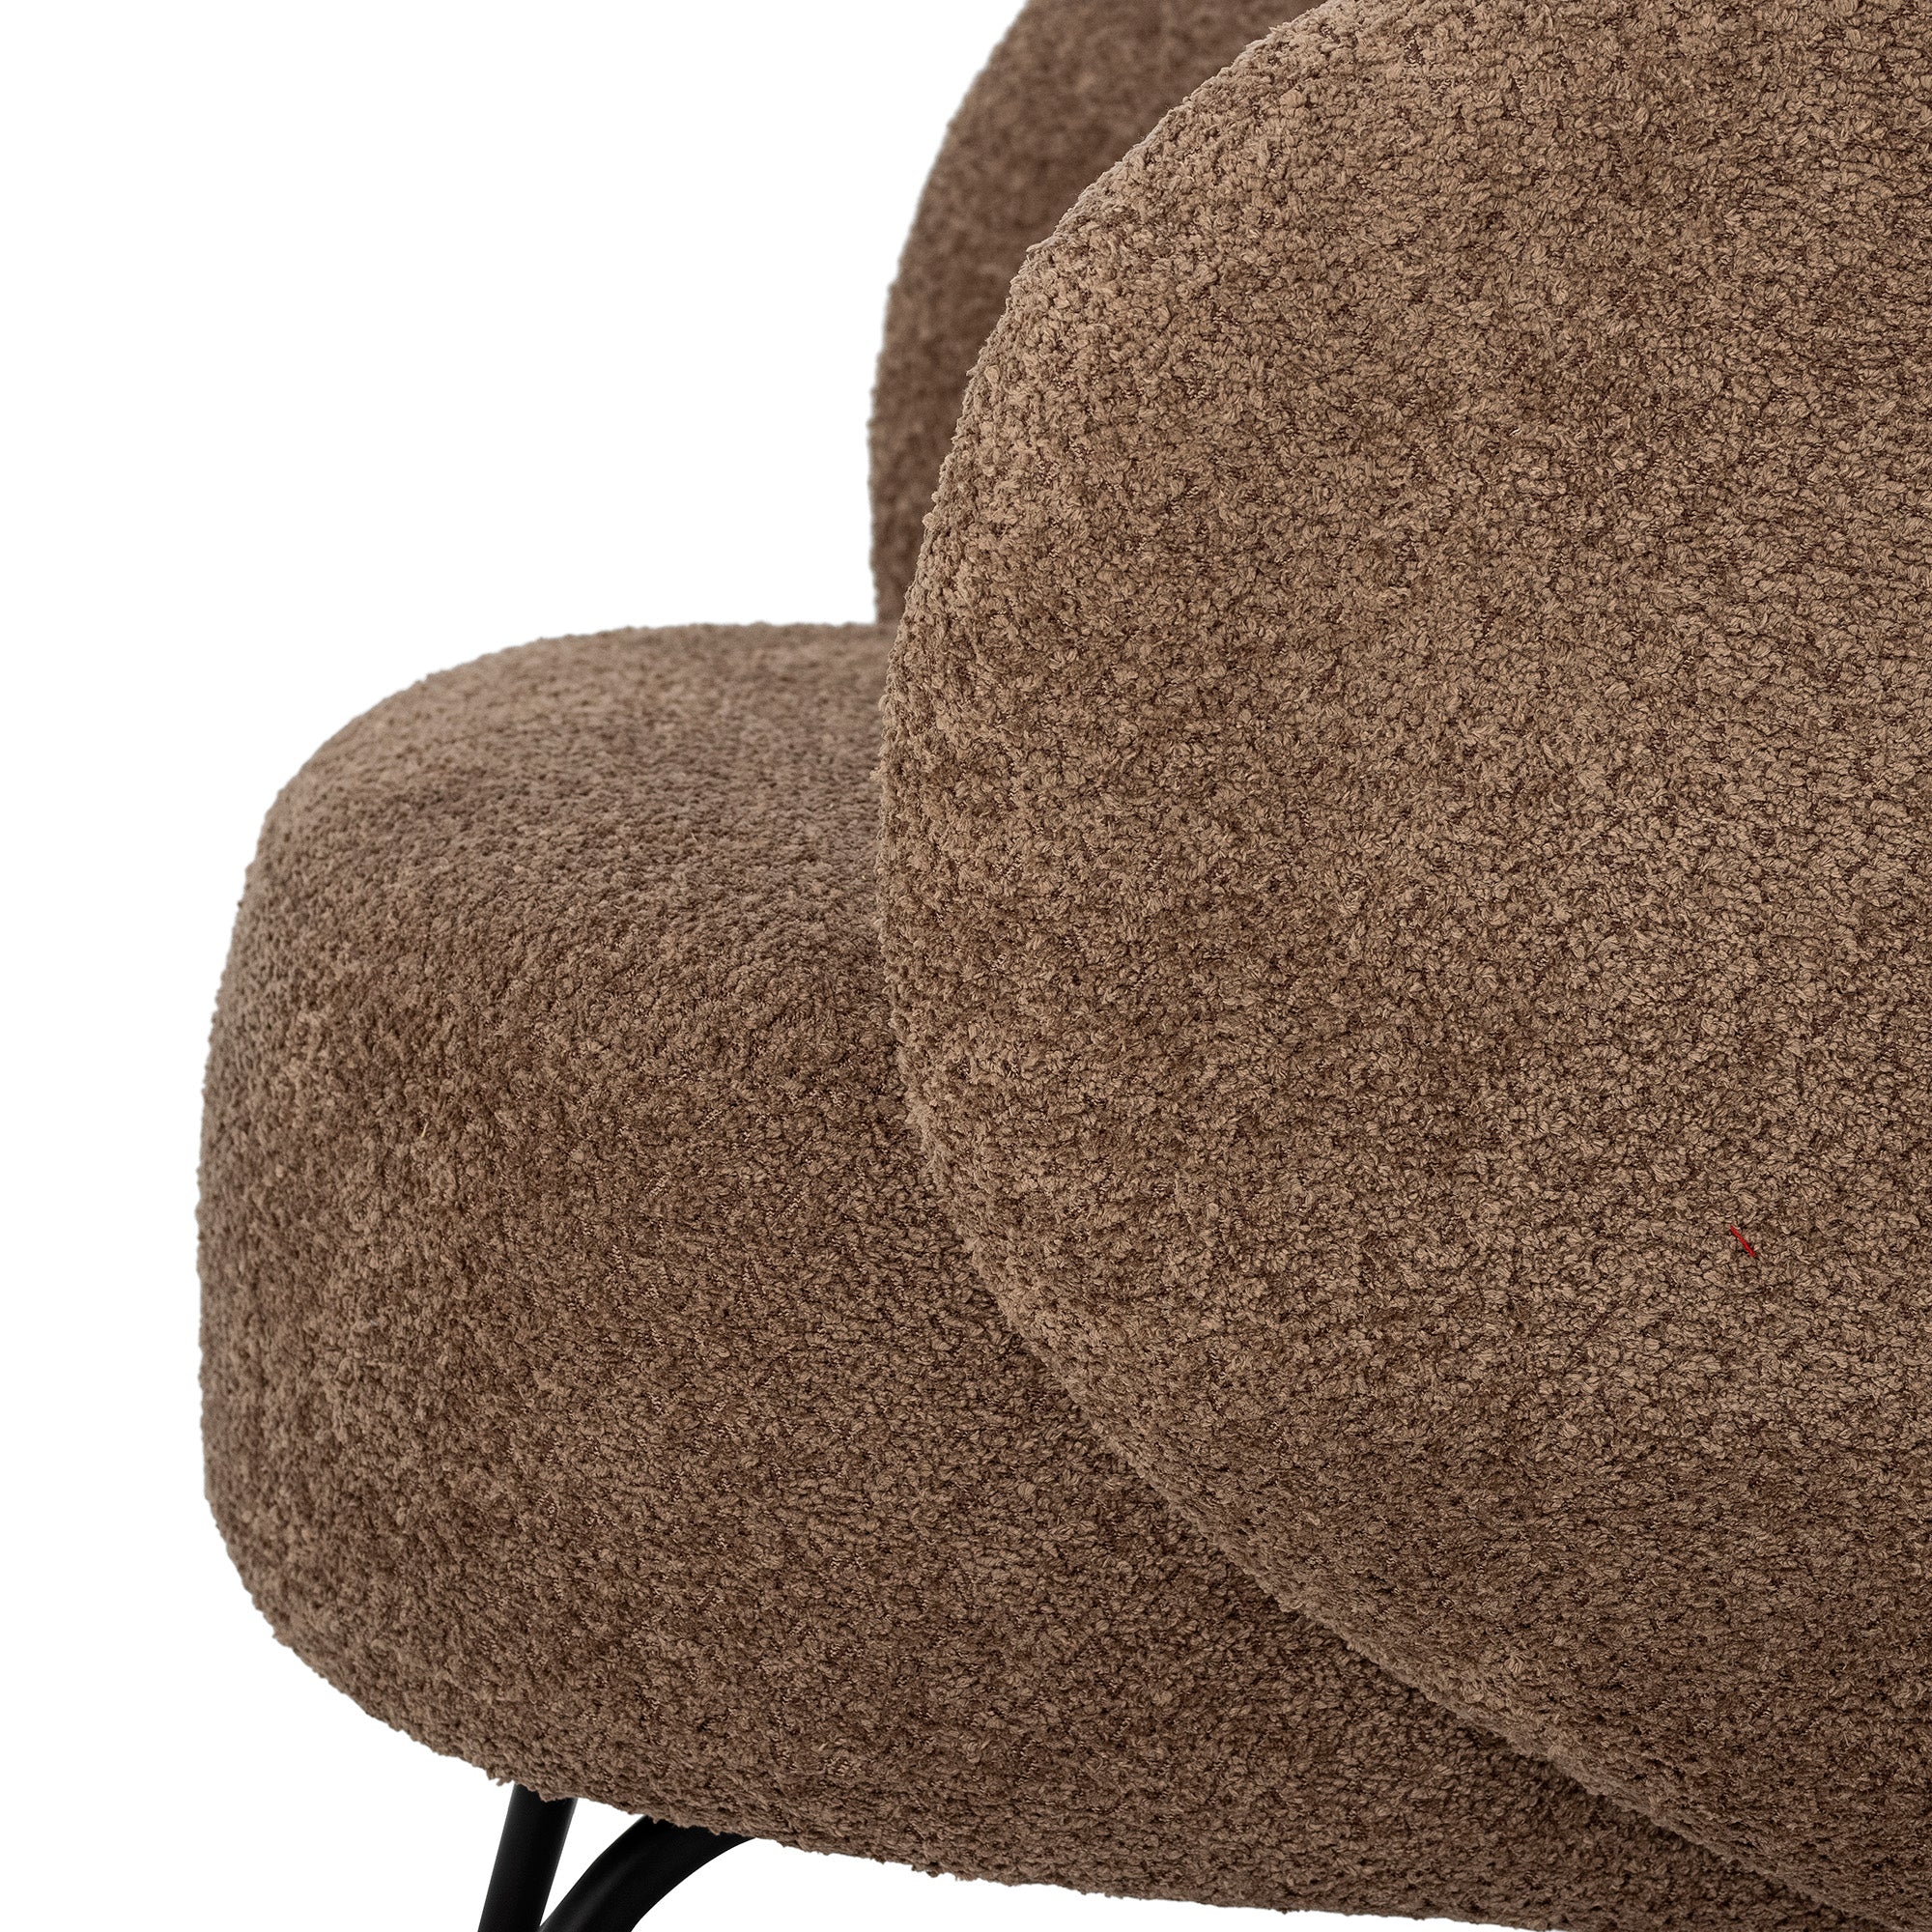 Harry Loungesessel, Braun, Polyester in Brown präsentiert im Onlineshop von KAQTU Design AG. Sessel ist von Bloomingville